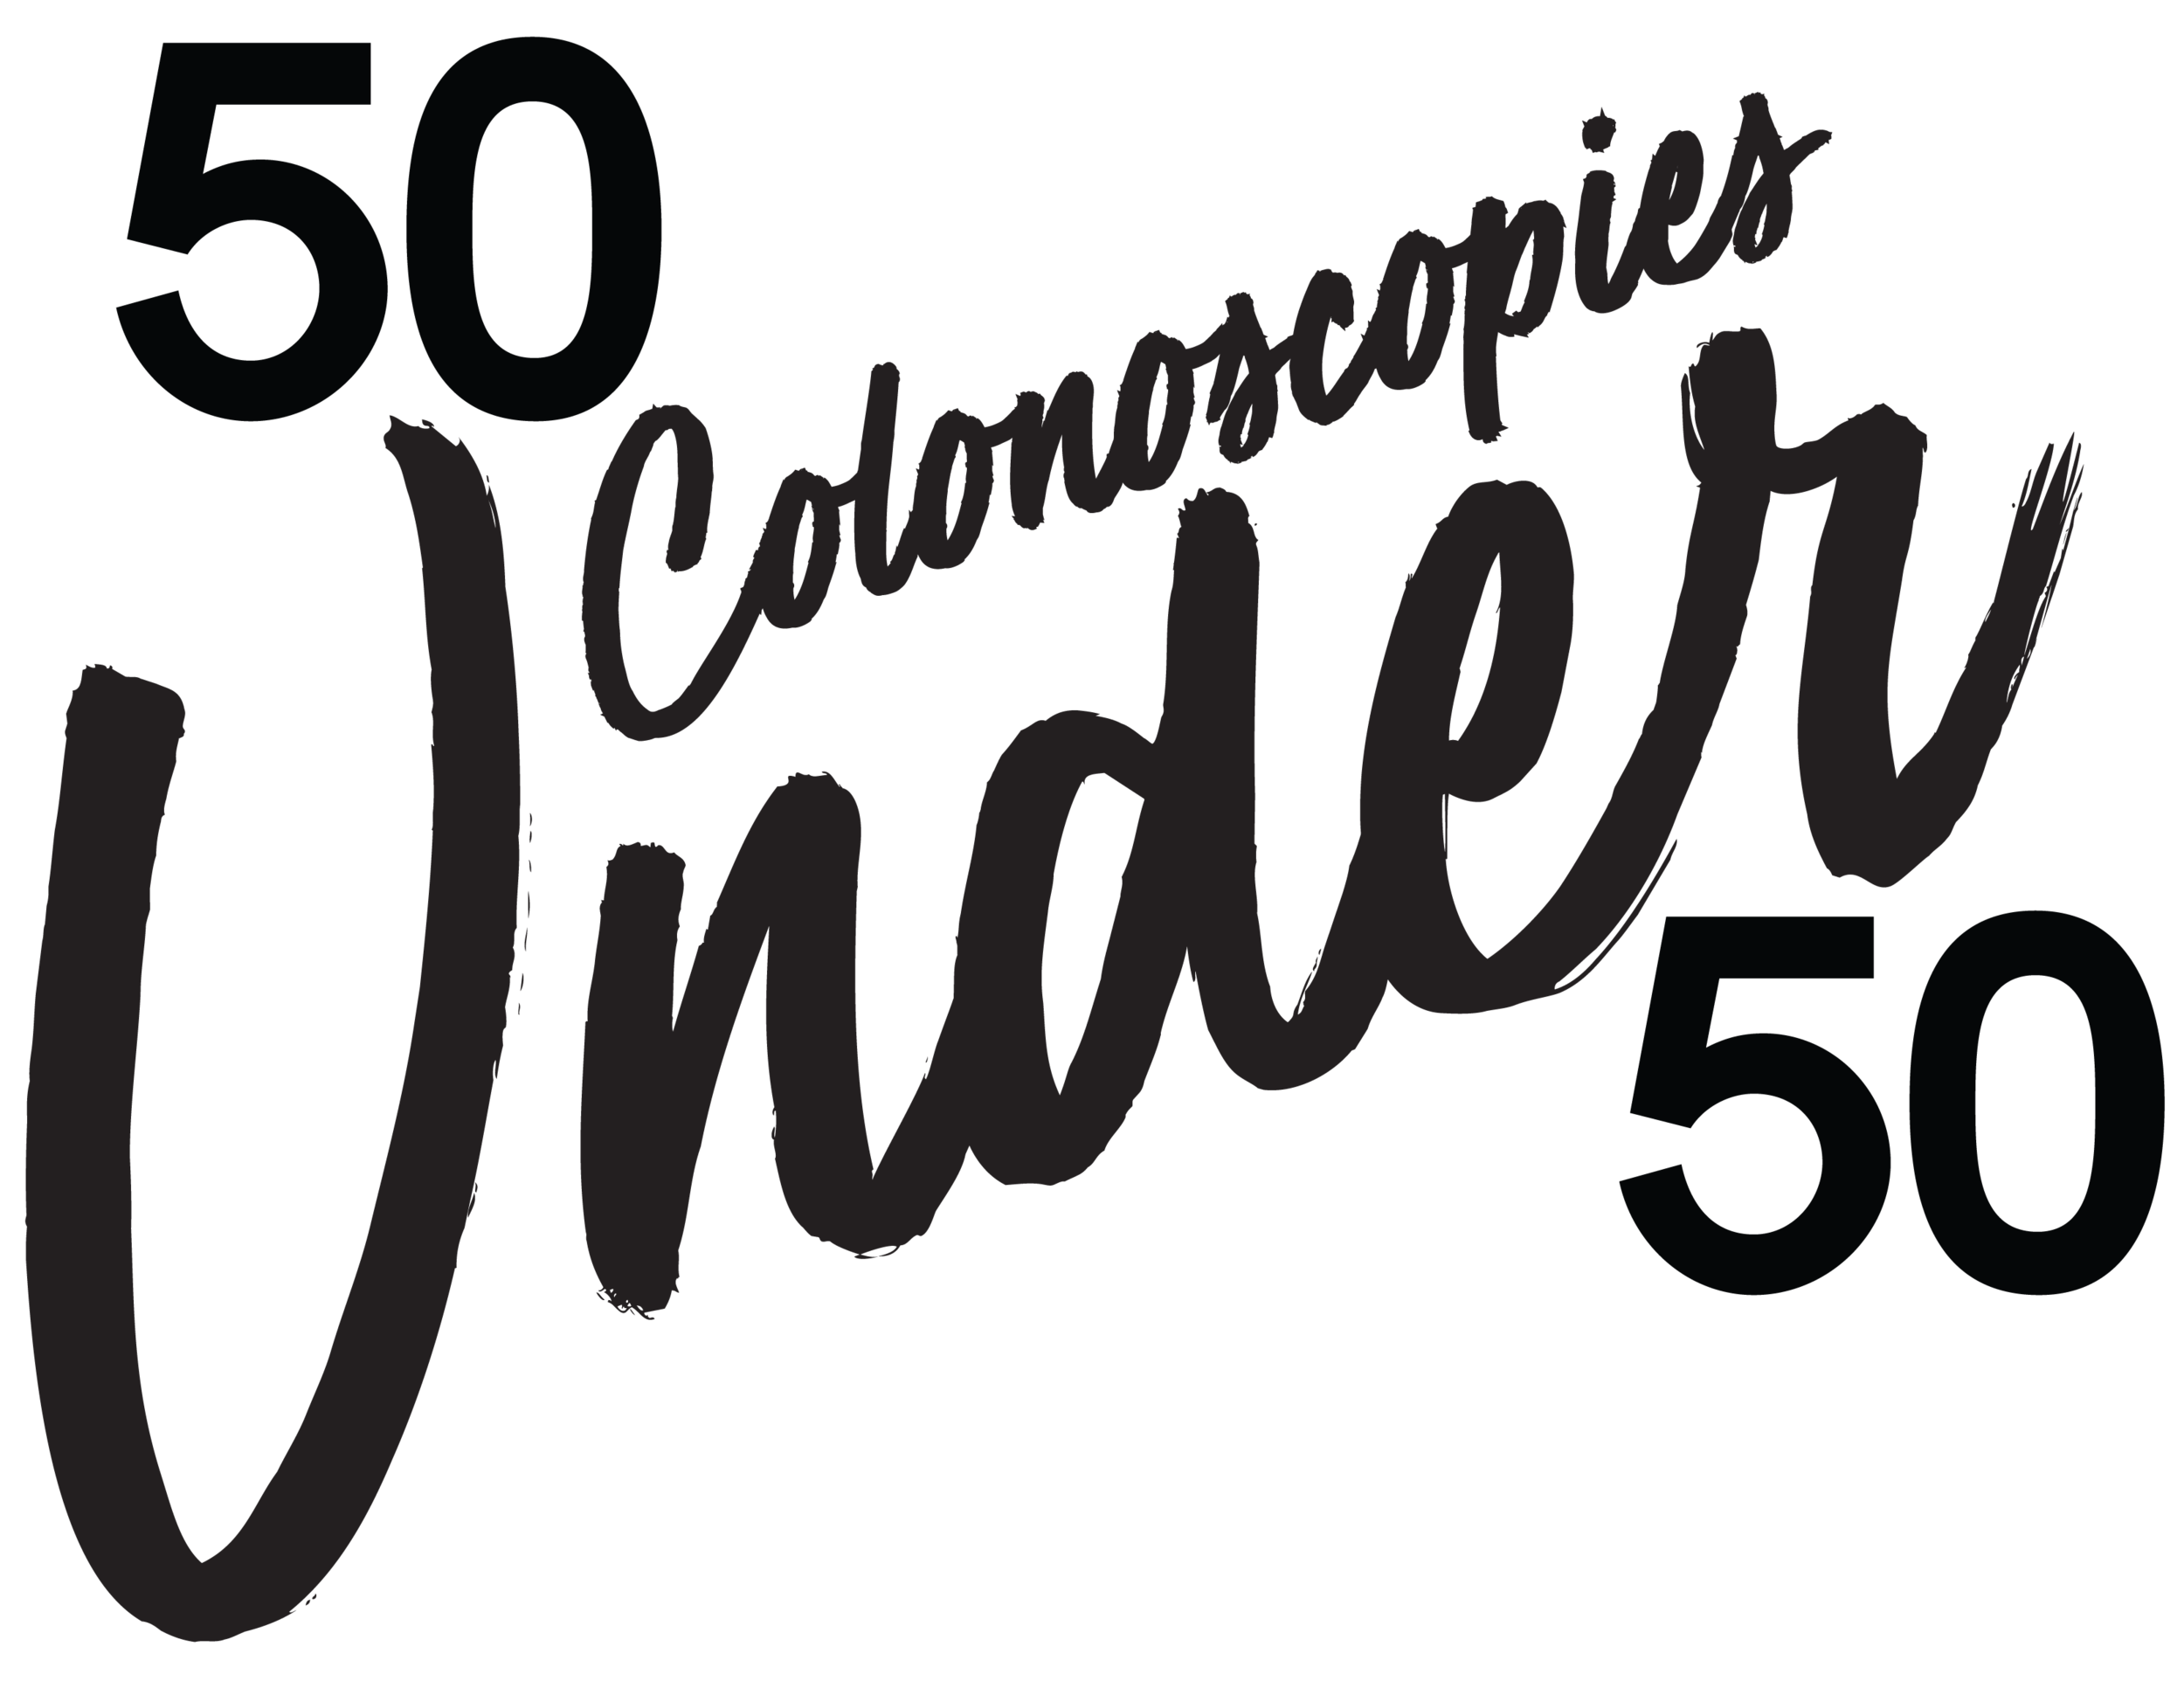 50 Colonoscopies Under 50